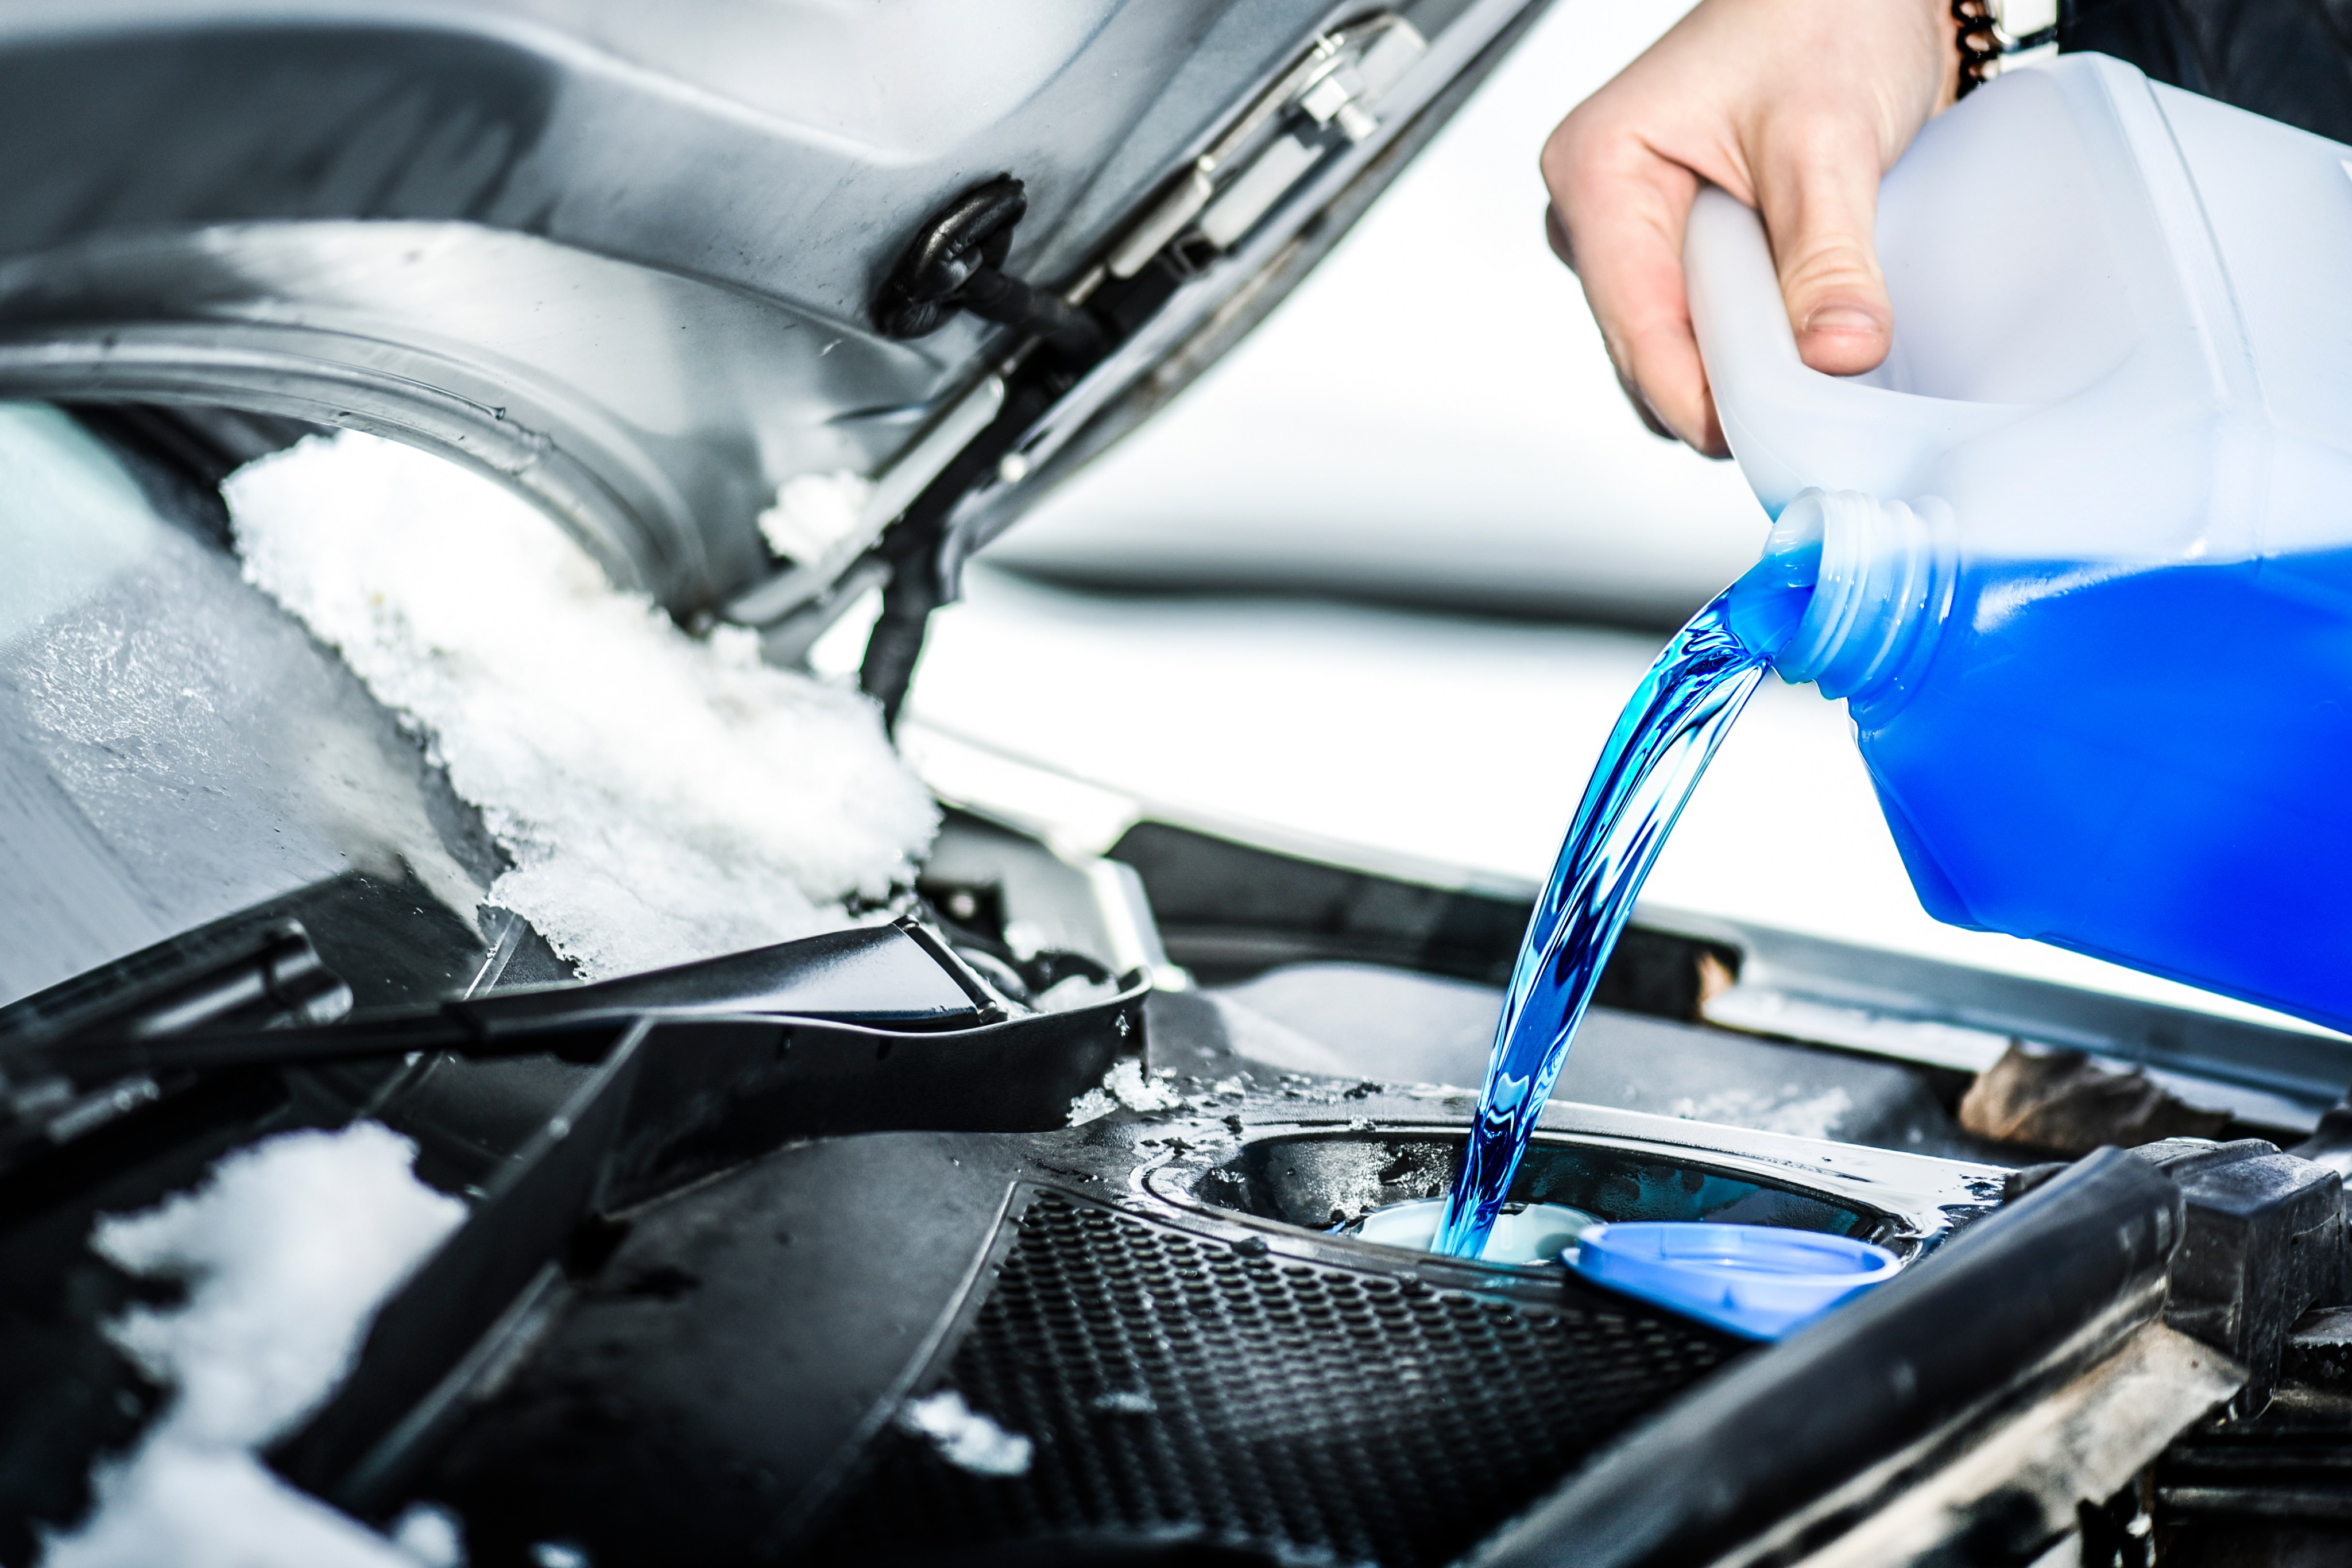 Cuán efectivo es usar agua en el sistema de limpiaparabrisas del auto -  Siempre Auto